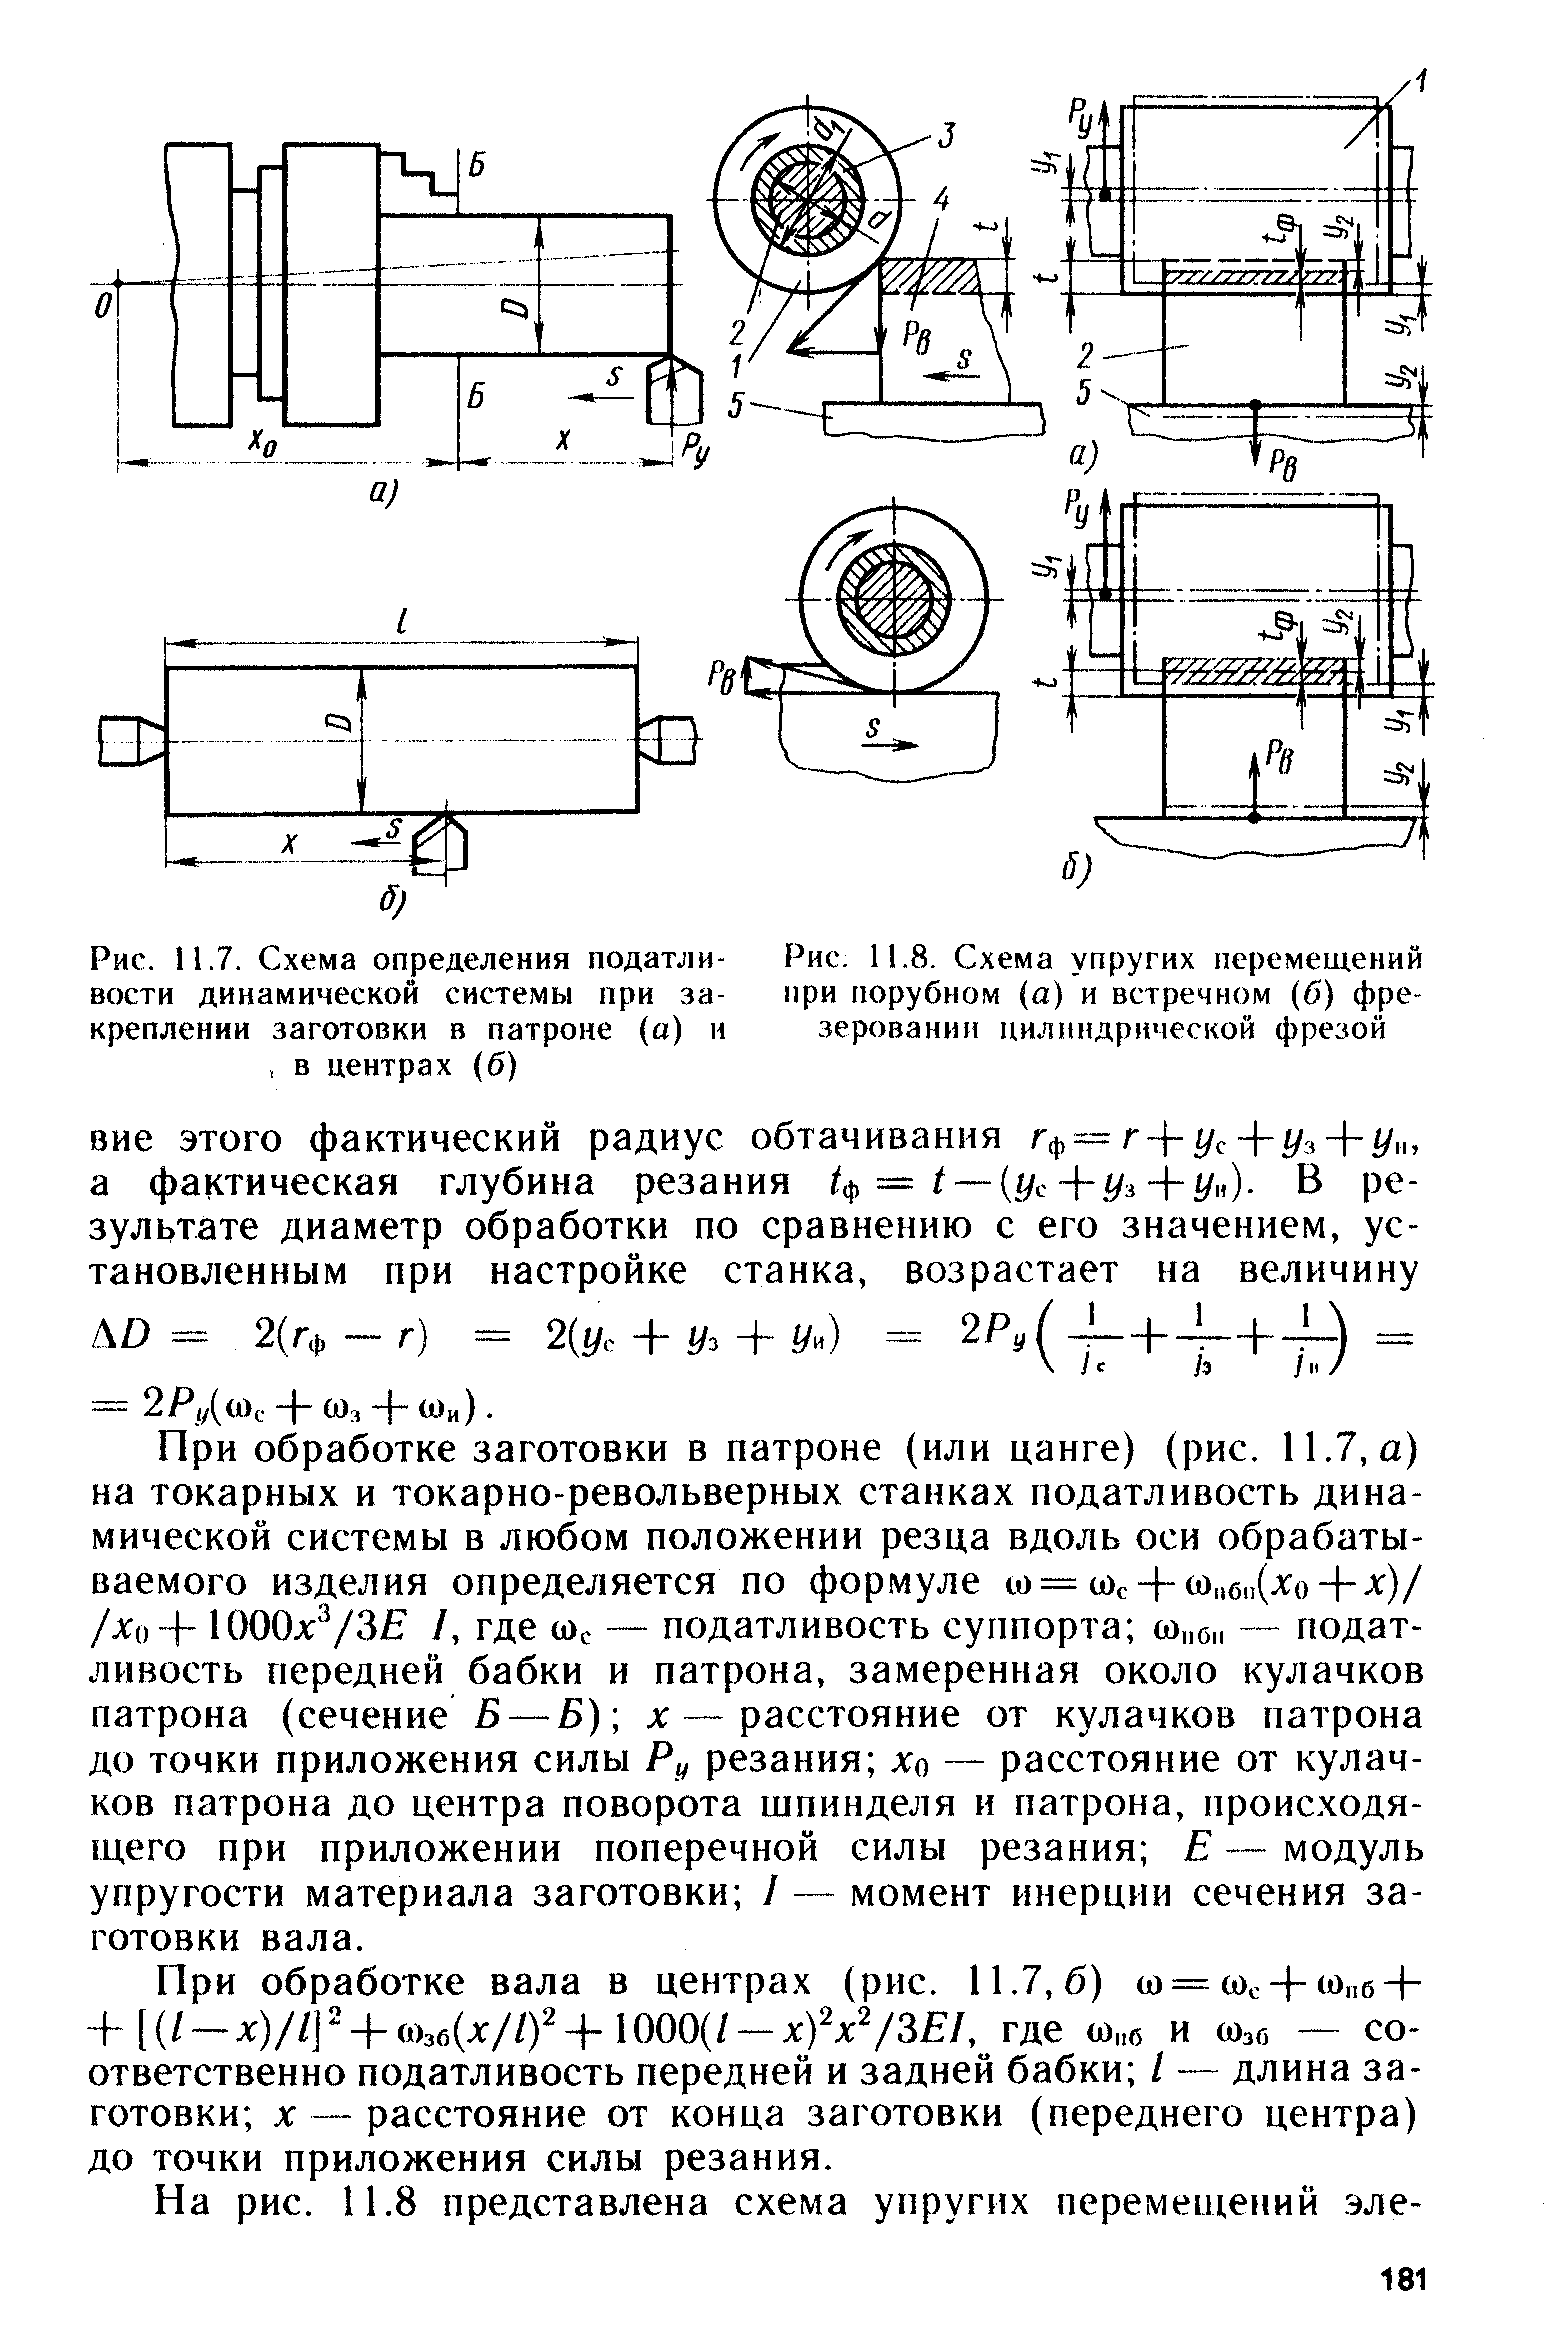 Рис. 11.7. Схема определения податливости динамической системы при закреплении заготовки в патроне (а) и, в центрах (б)
